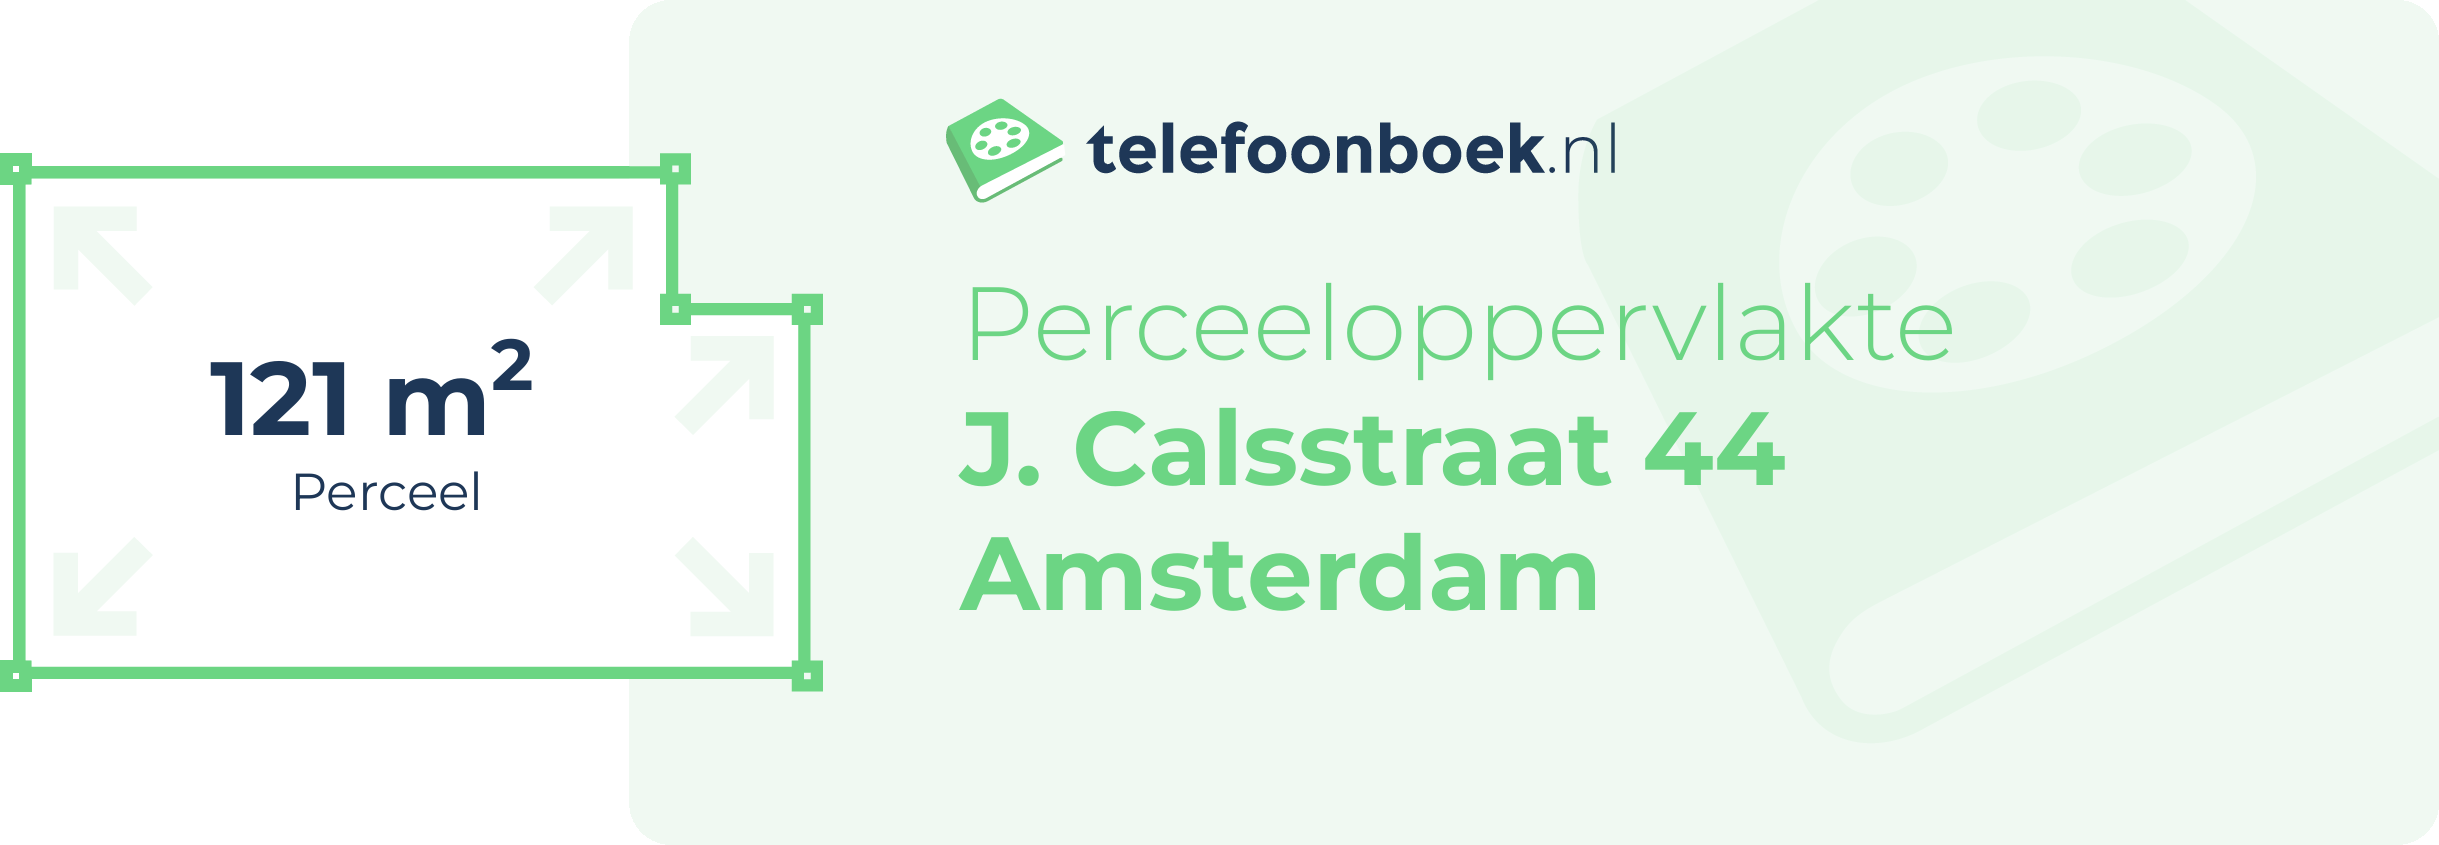 Perceeloppervlakte J. Calsstraat 44 Amsterdam